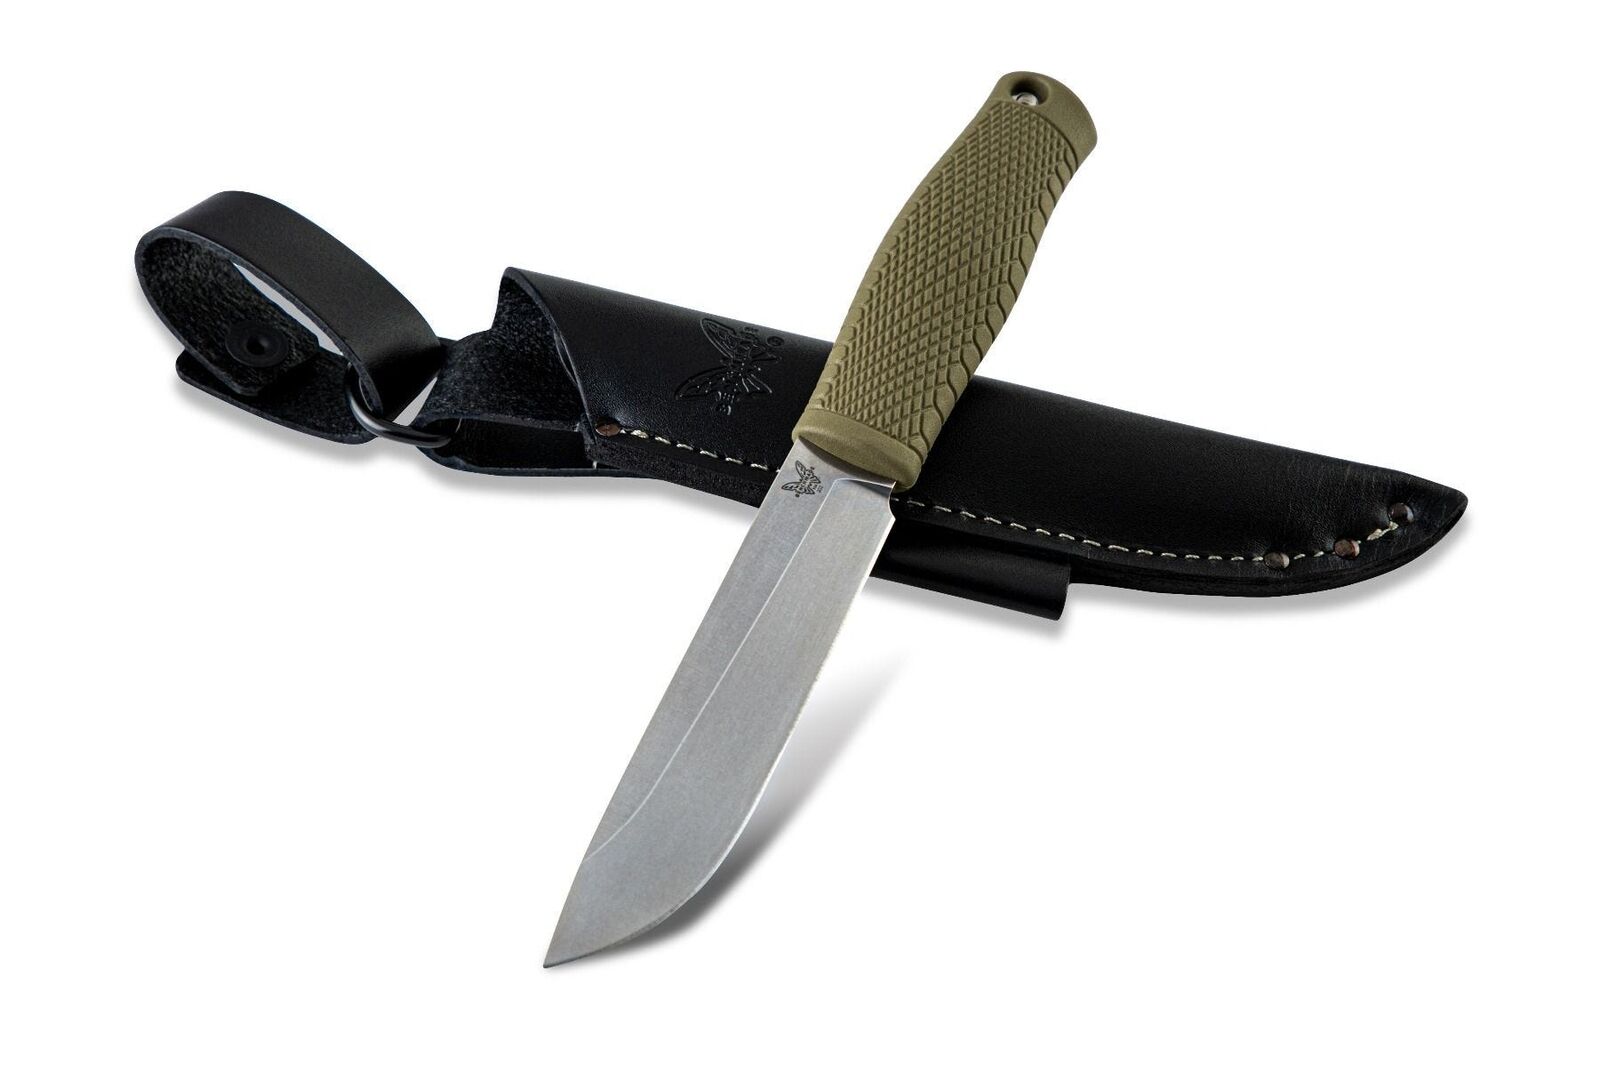 Benchmade Knives Leuku Fixed Blade Knife 202 CPM-3V Tool Ranger Green Santoprene